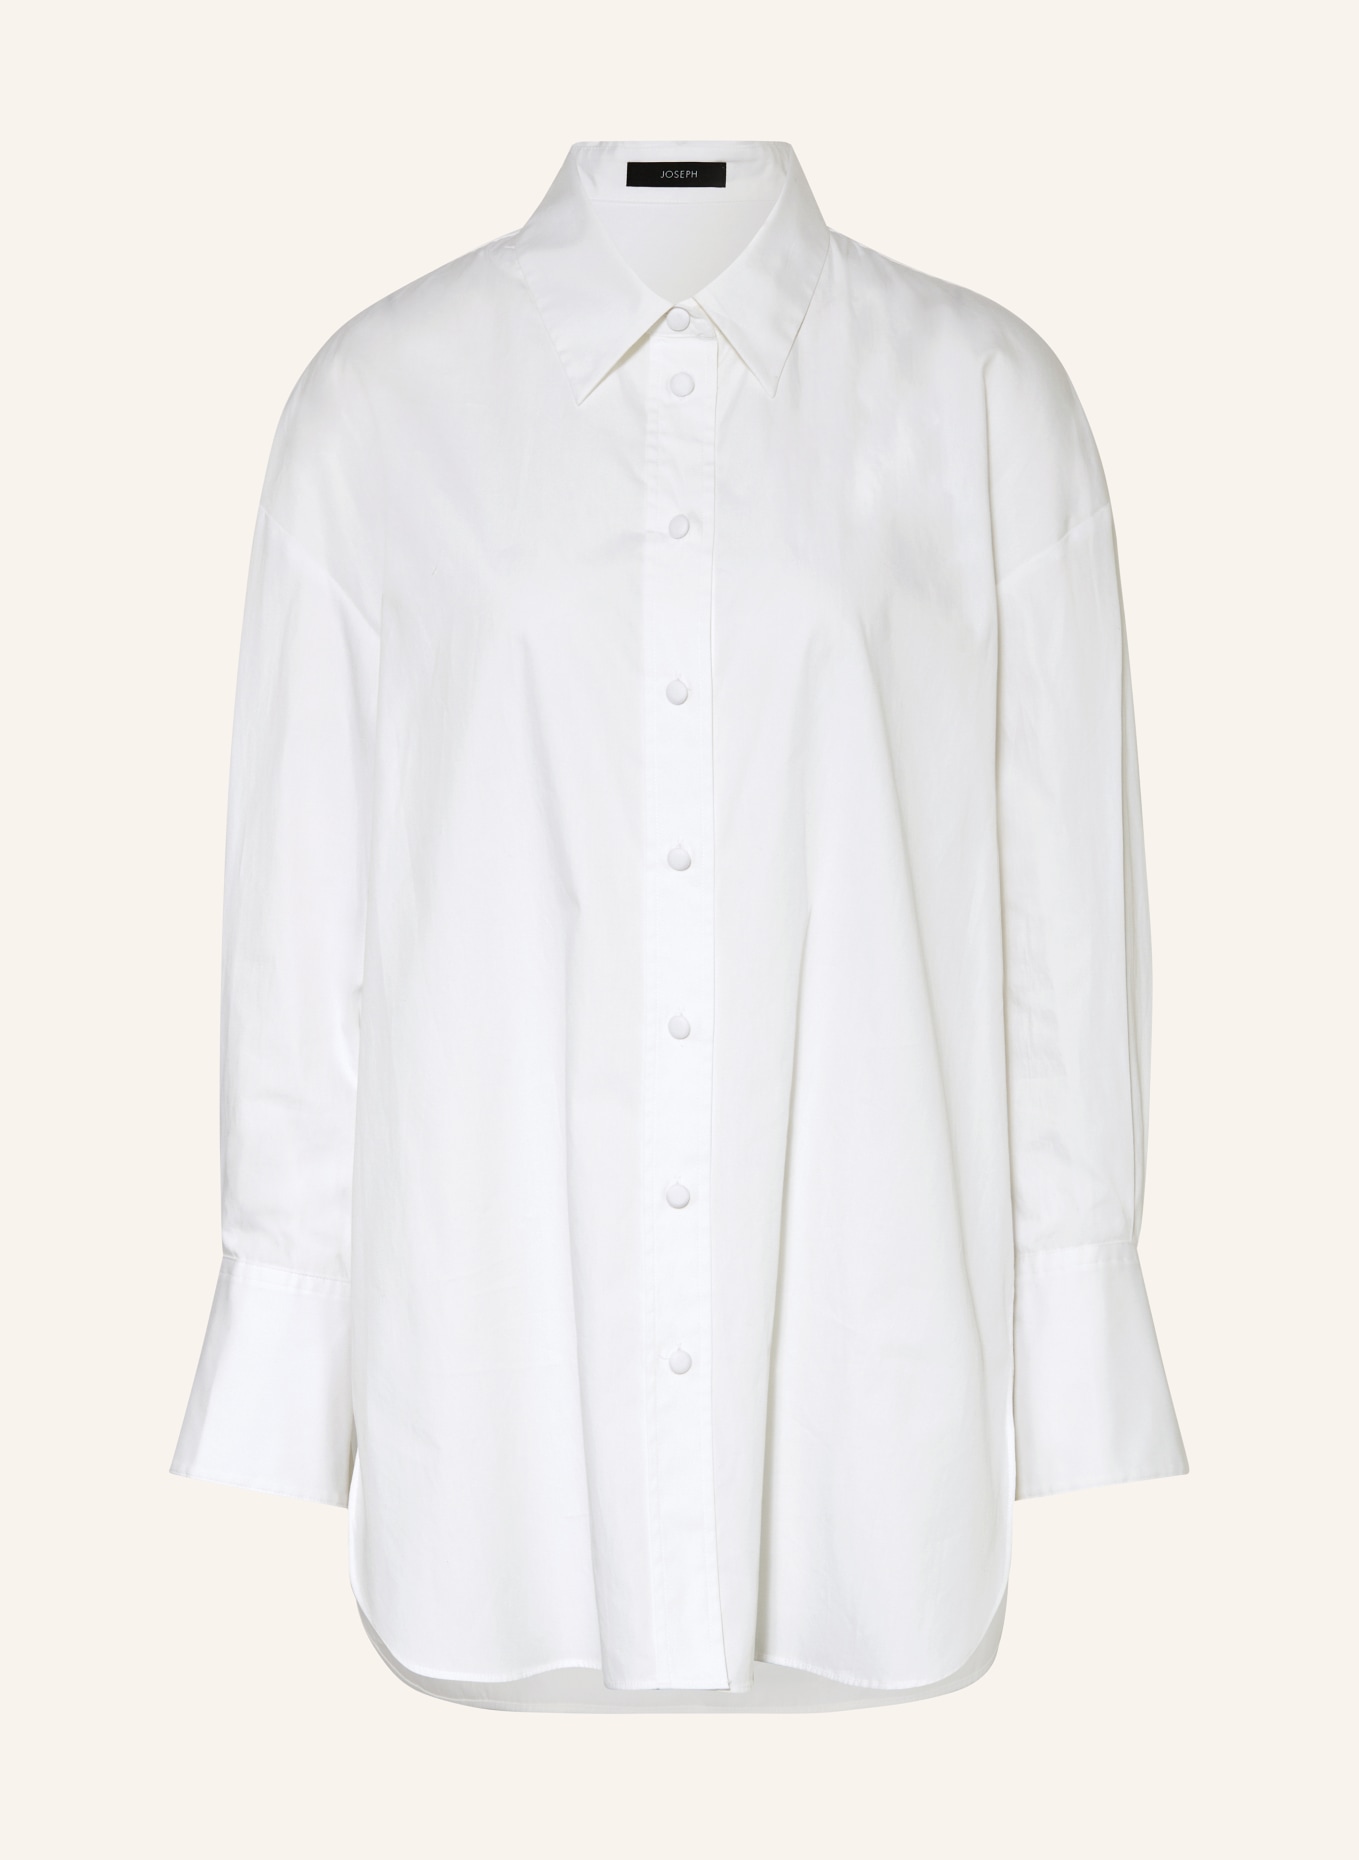 JOSEPH Oversized shirt blouse BERTON, Color: WHITE (Image 1)